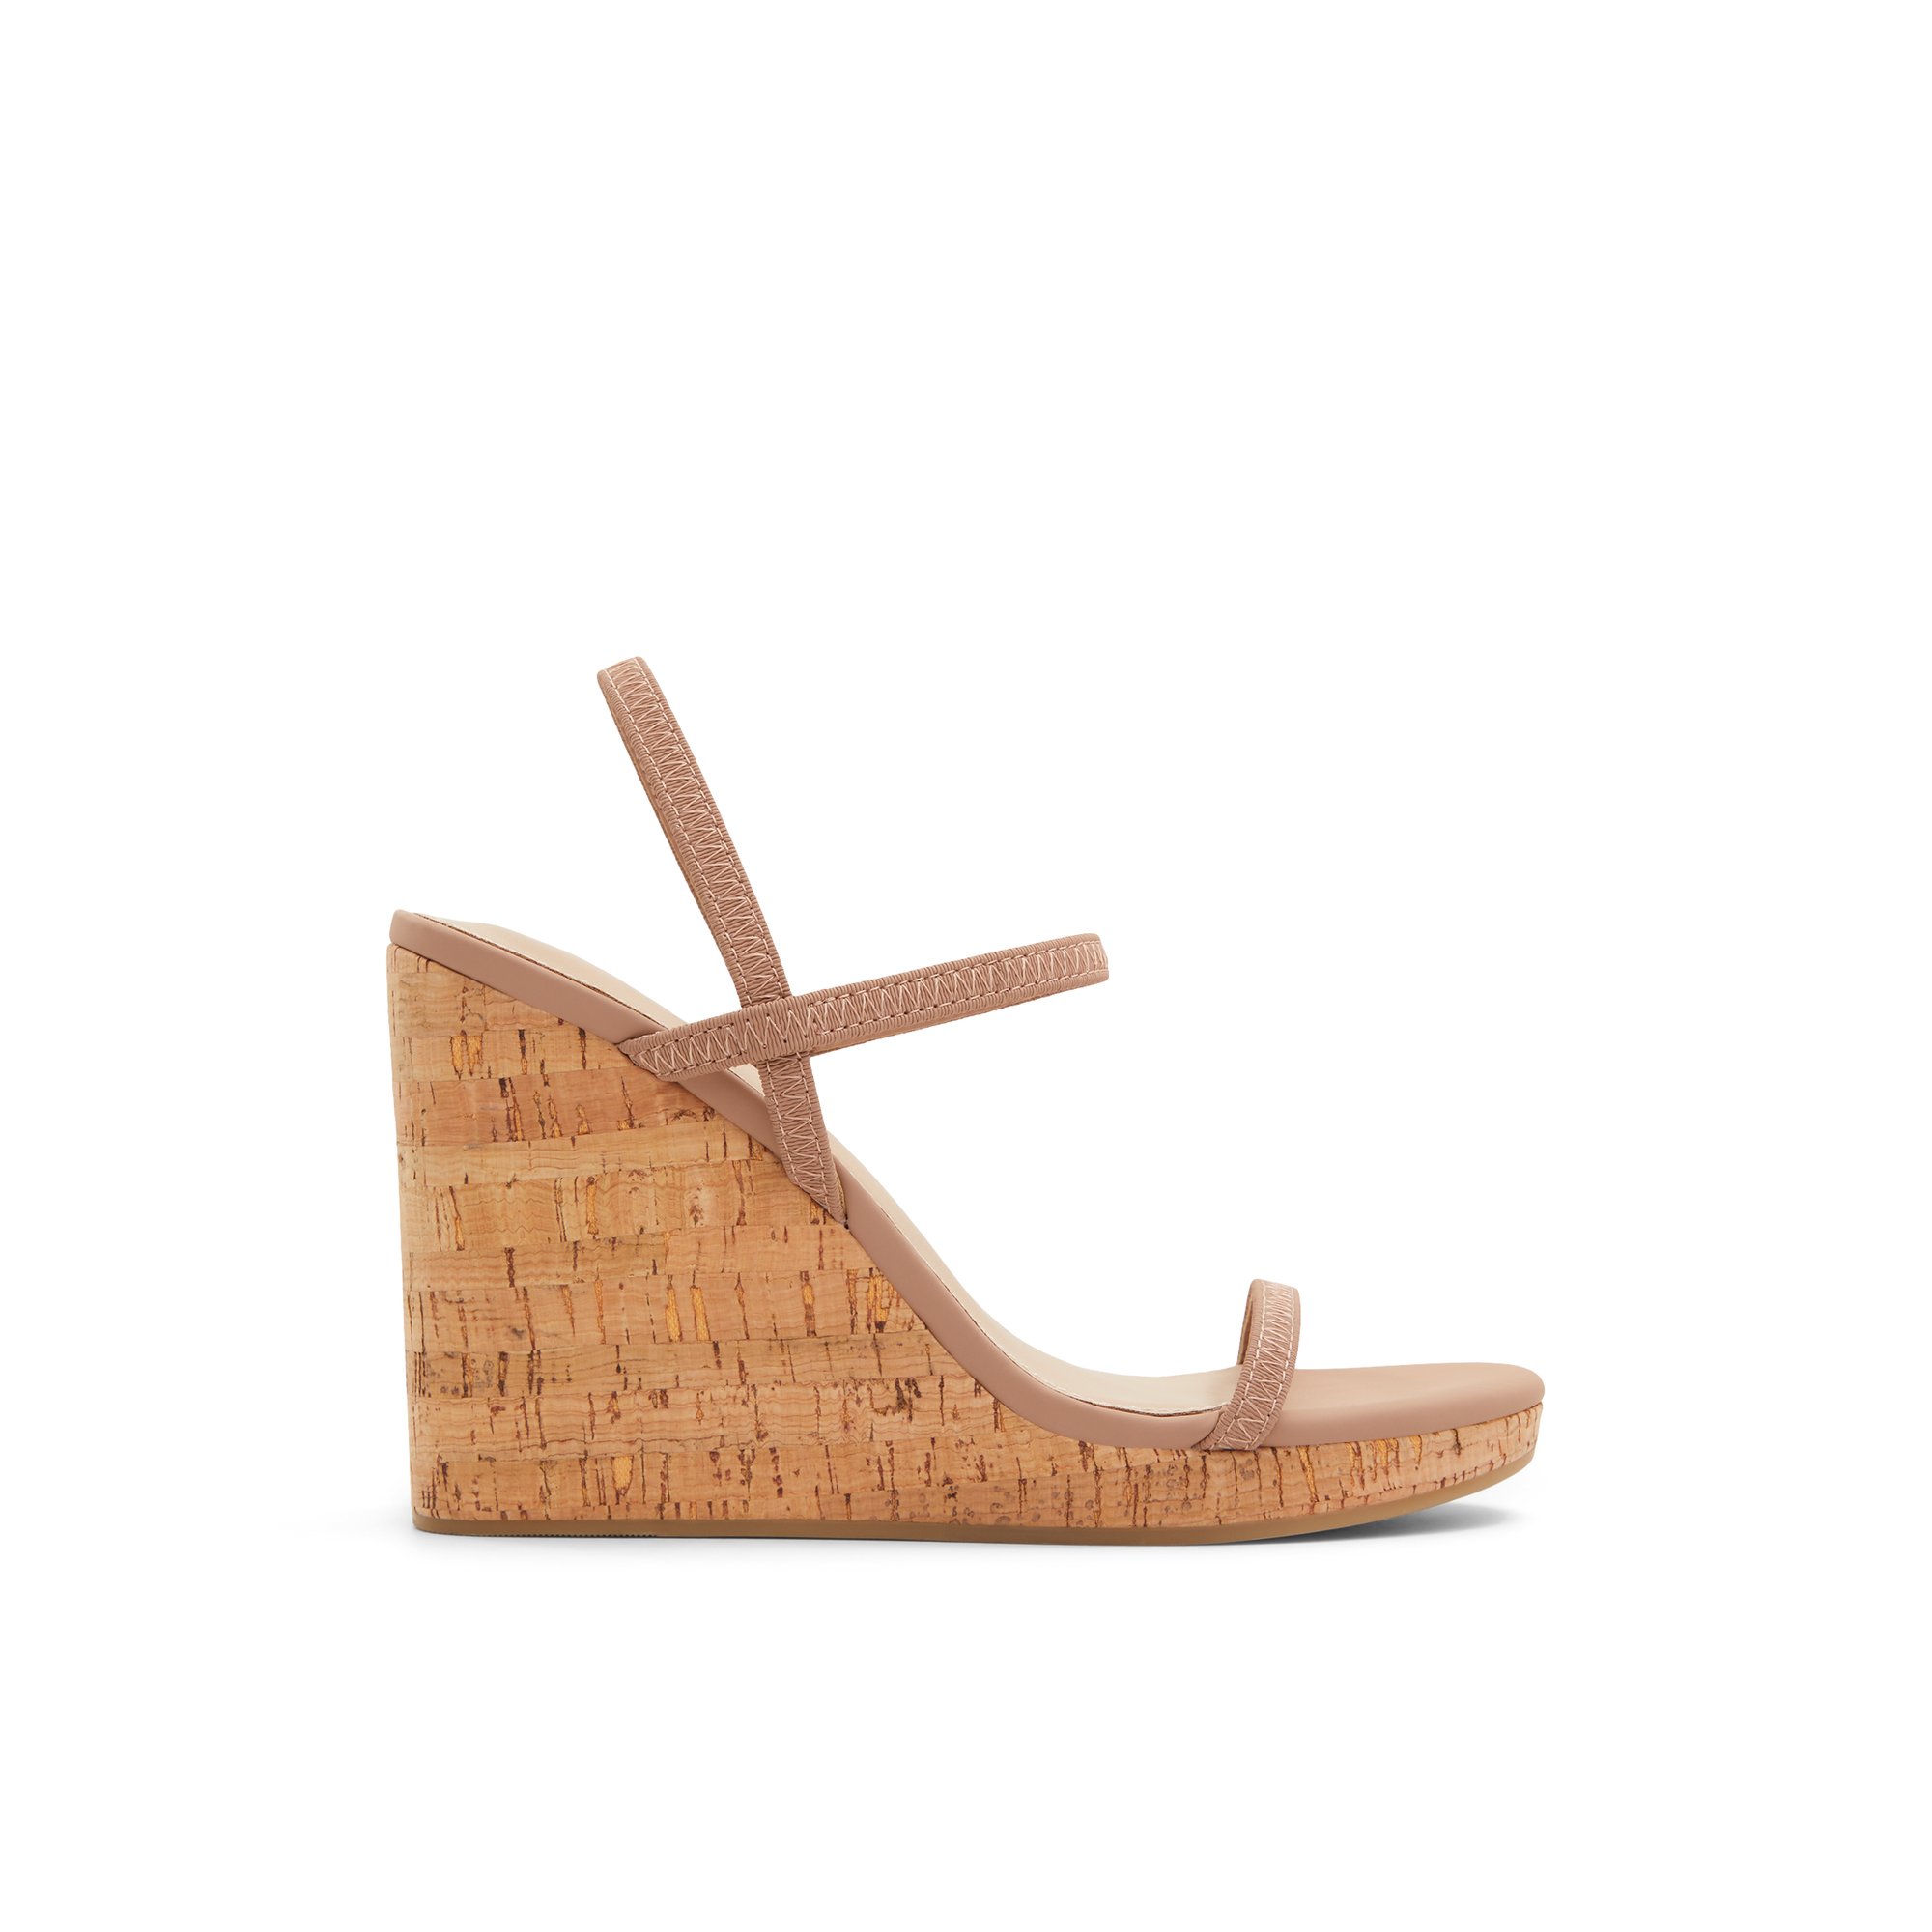 ALDO Mirabella - Women's Sandals Wedges - Beige